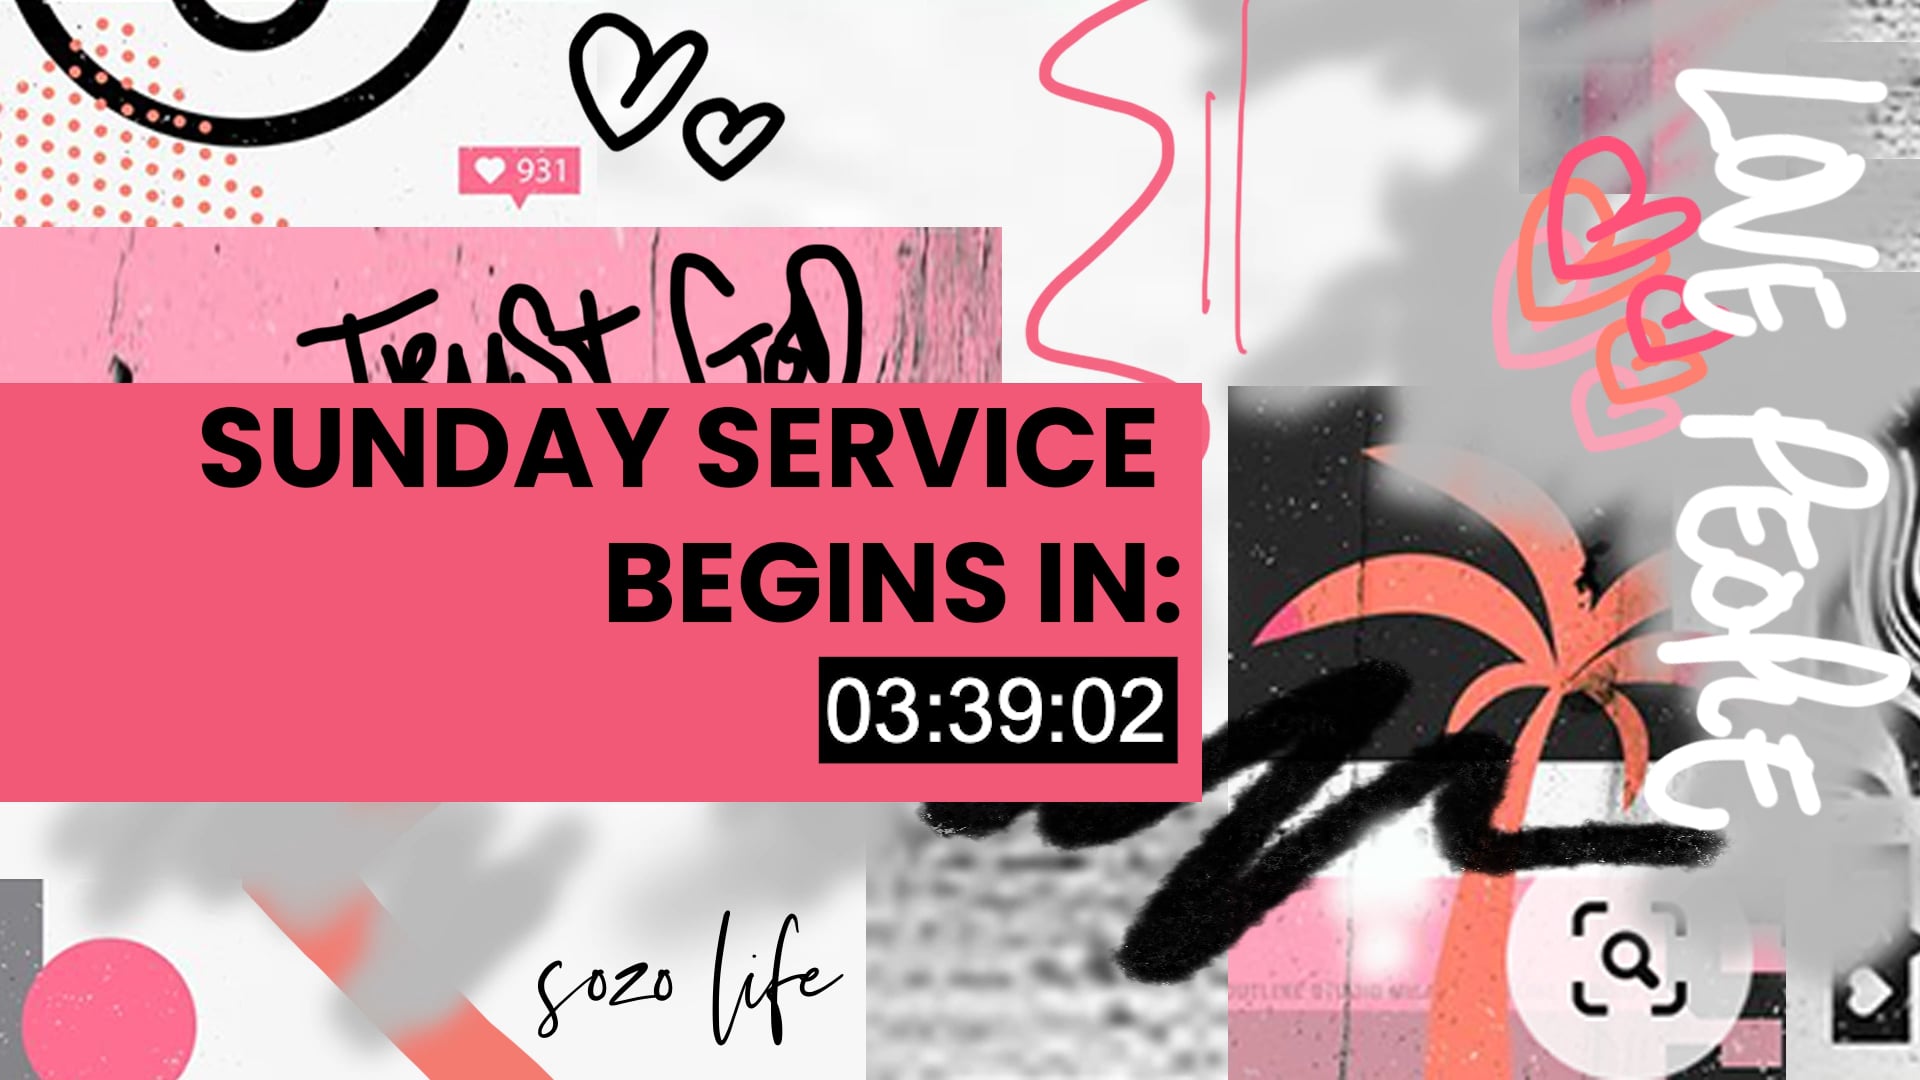 SOZO LIFE - Sunday Service 04.07.2021.mp4